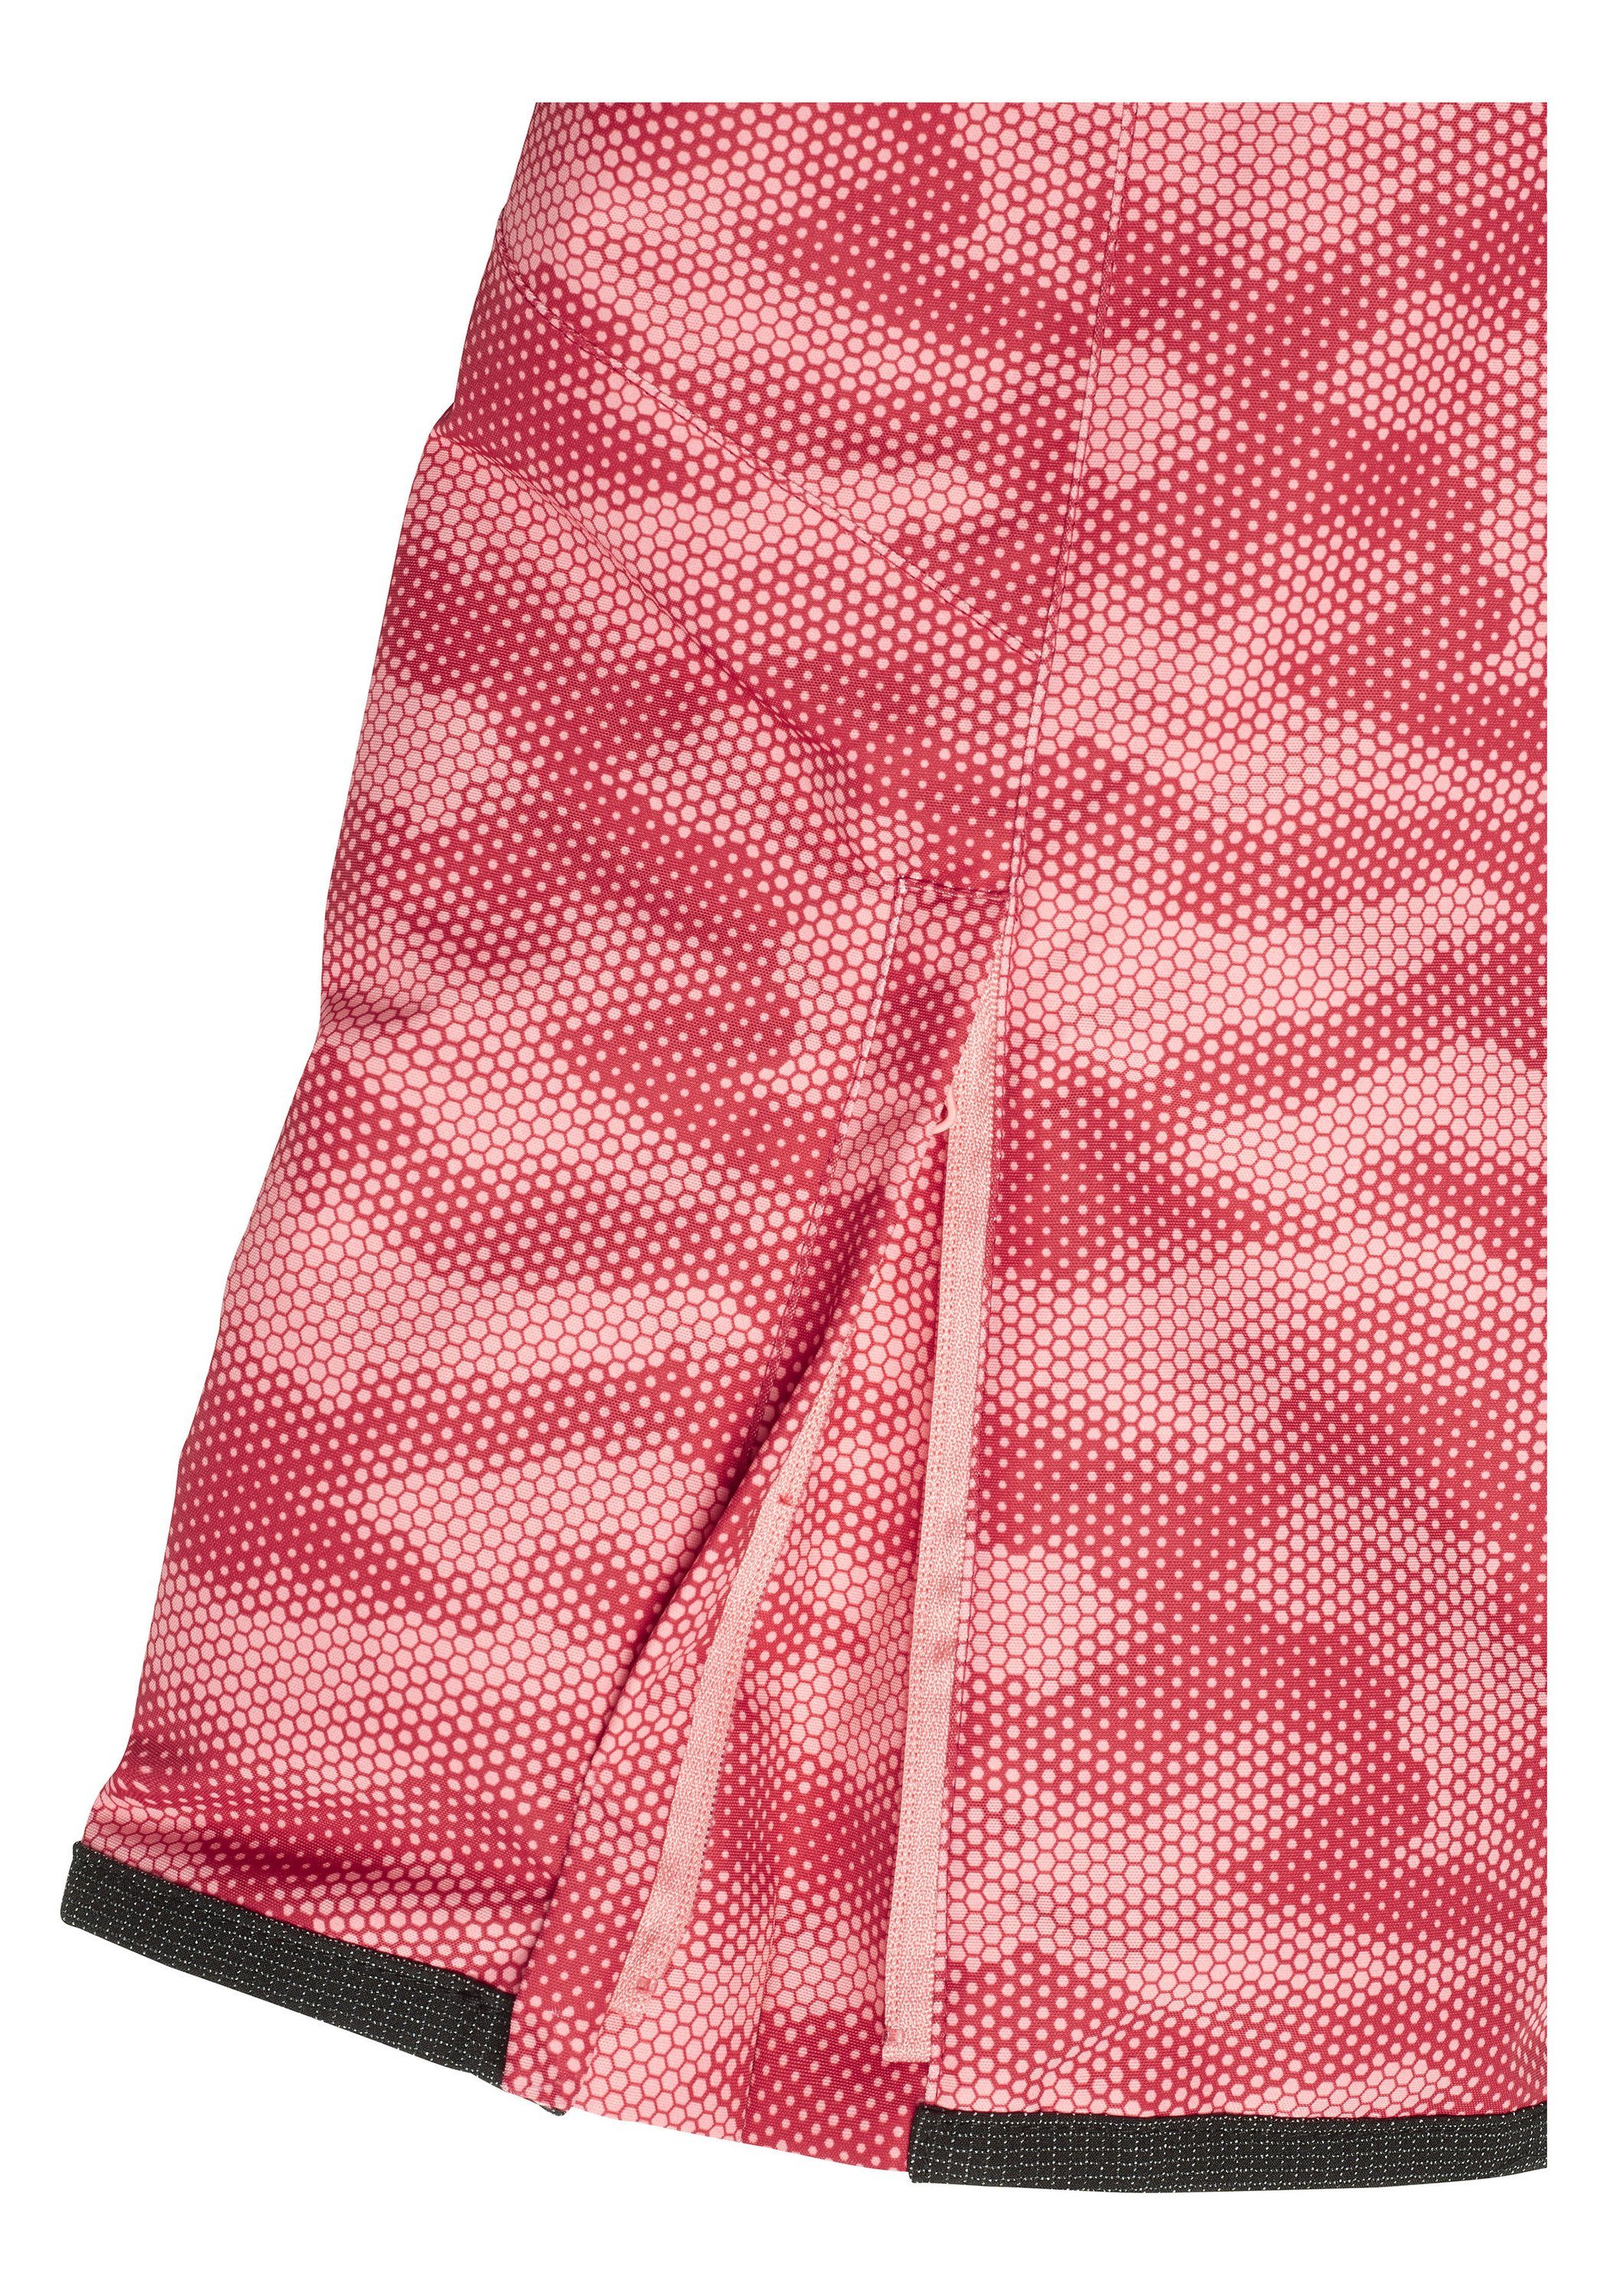 Sporthose Skihose mit Chiemsee Reißverschlusstaschen 1 hell seitlichen rosa/rosa